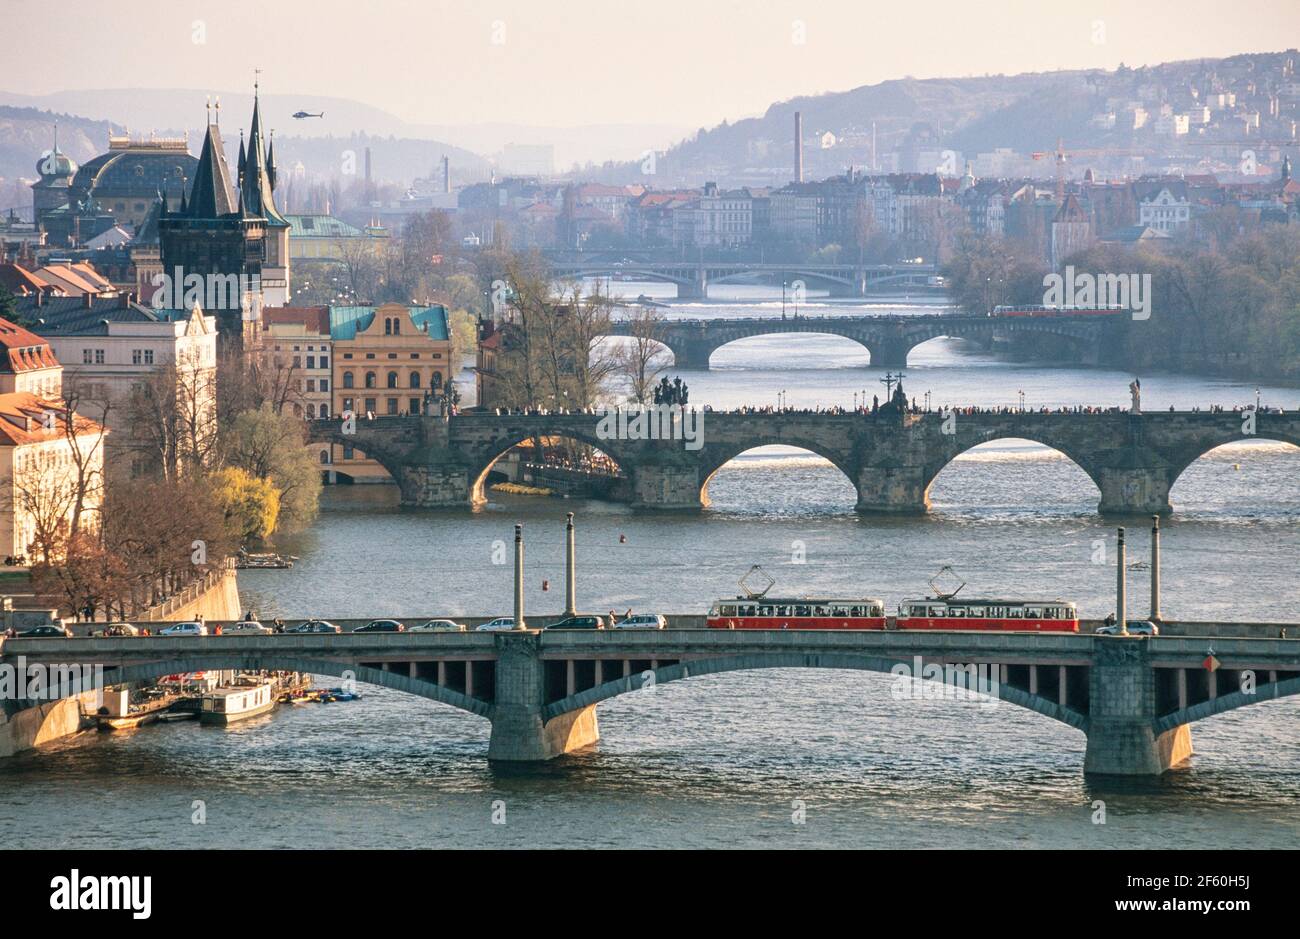 2002 Praga - tre ponti sul fiume Moldava skyline di Praga Repubblica Ceca Europa. L'elicottero si aggira sopra la città vecchia.i tram attraversano il primo ponte, il ponte Manes (Mánesův la maggior parte) e la folla attraversa il ponte Carlo (Karlův Most), il secondo ponte. Foto Stock